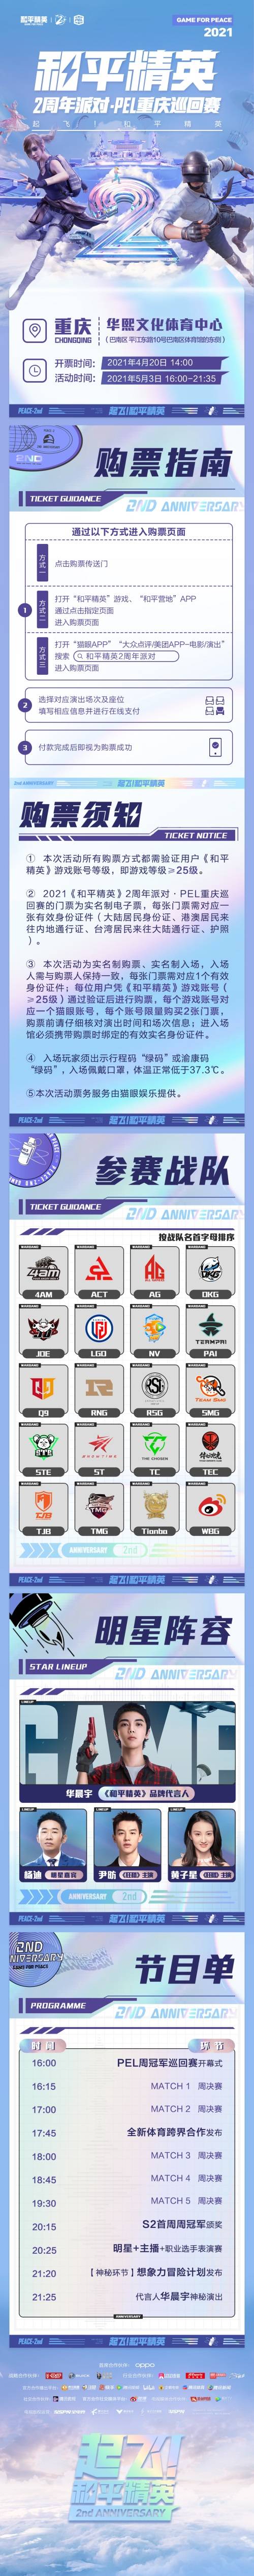 《和平精英》2周年派对 · PEL 重庆巡回赛4月20日开启售票！还有神秘内容公布哦